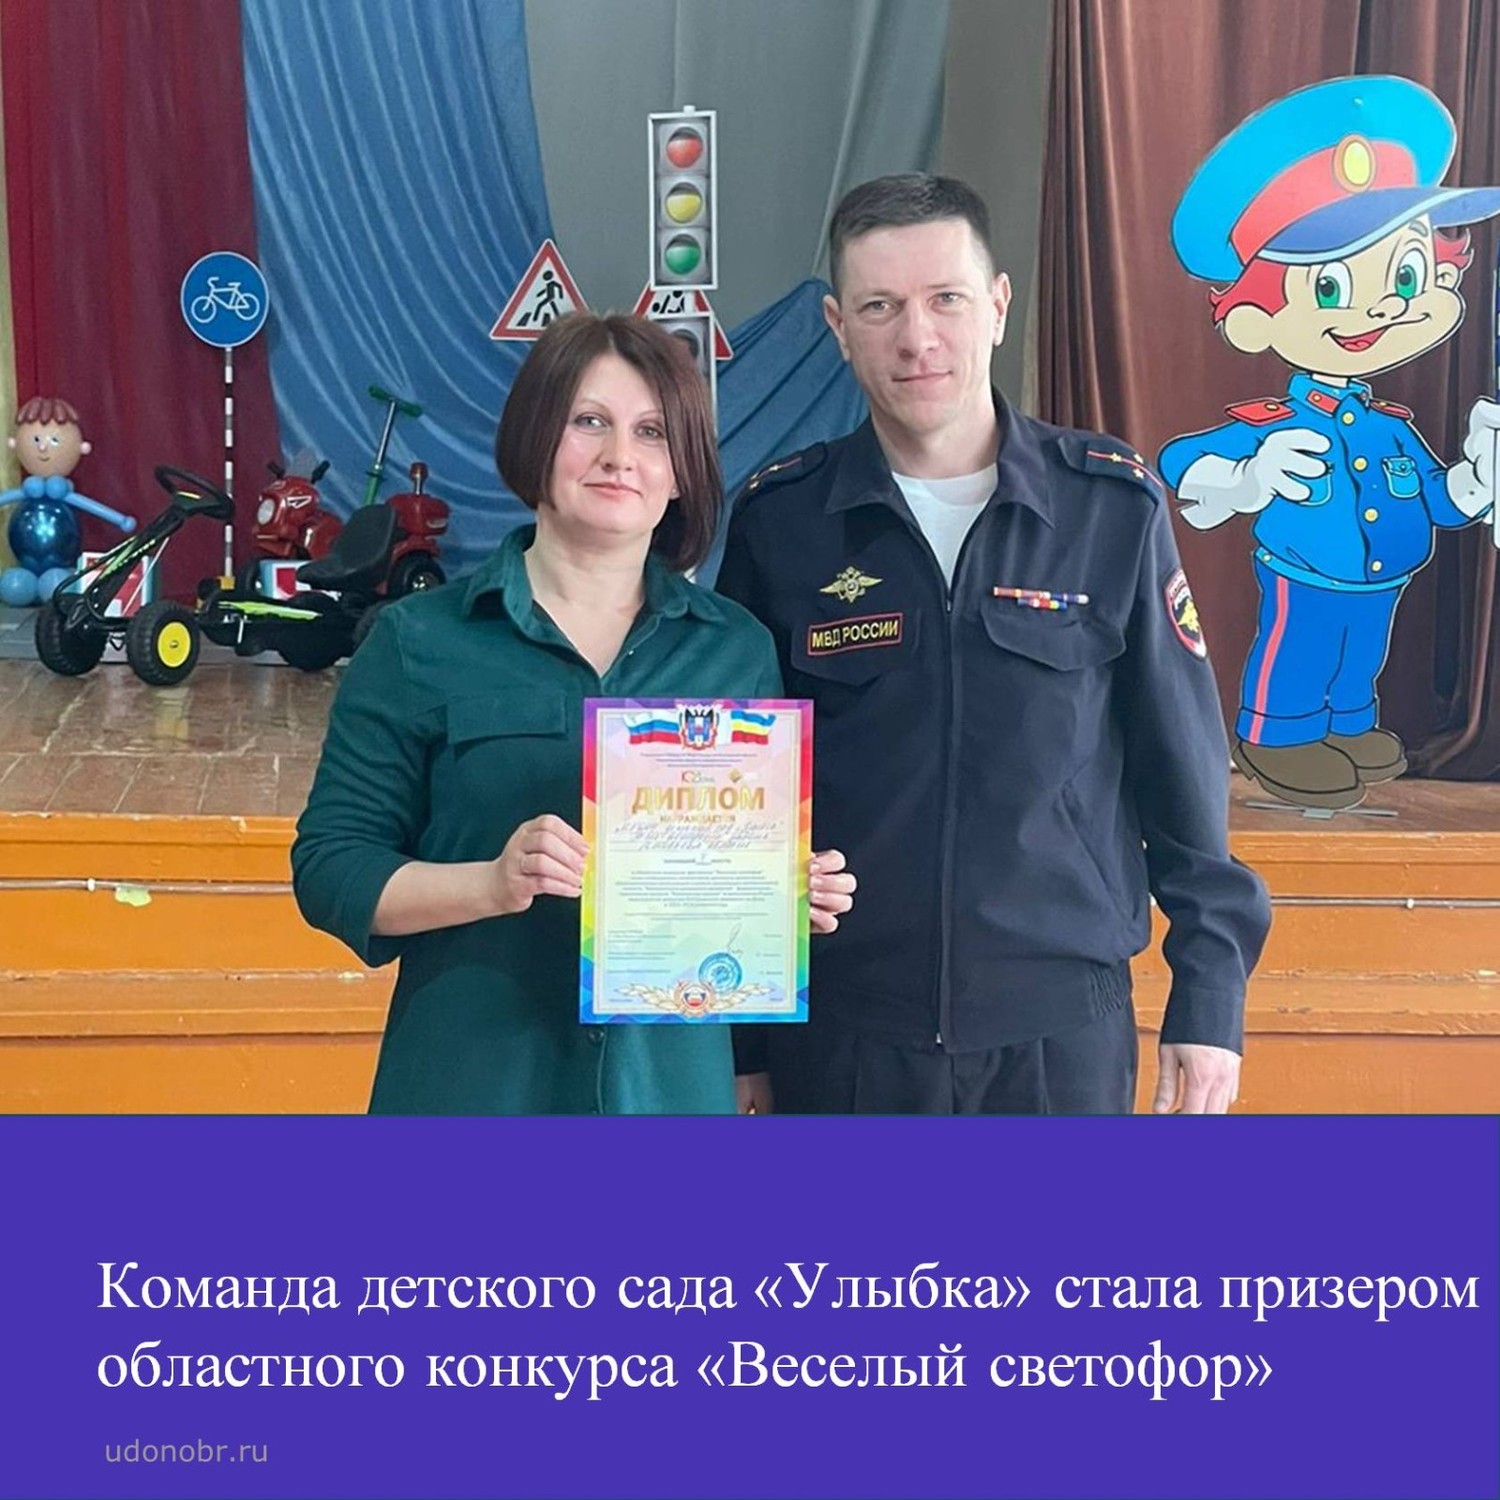 Команда детского сада «Улыбка» стала призером областного конкурса «Веселый светофор»